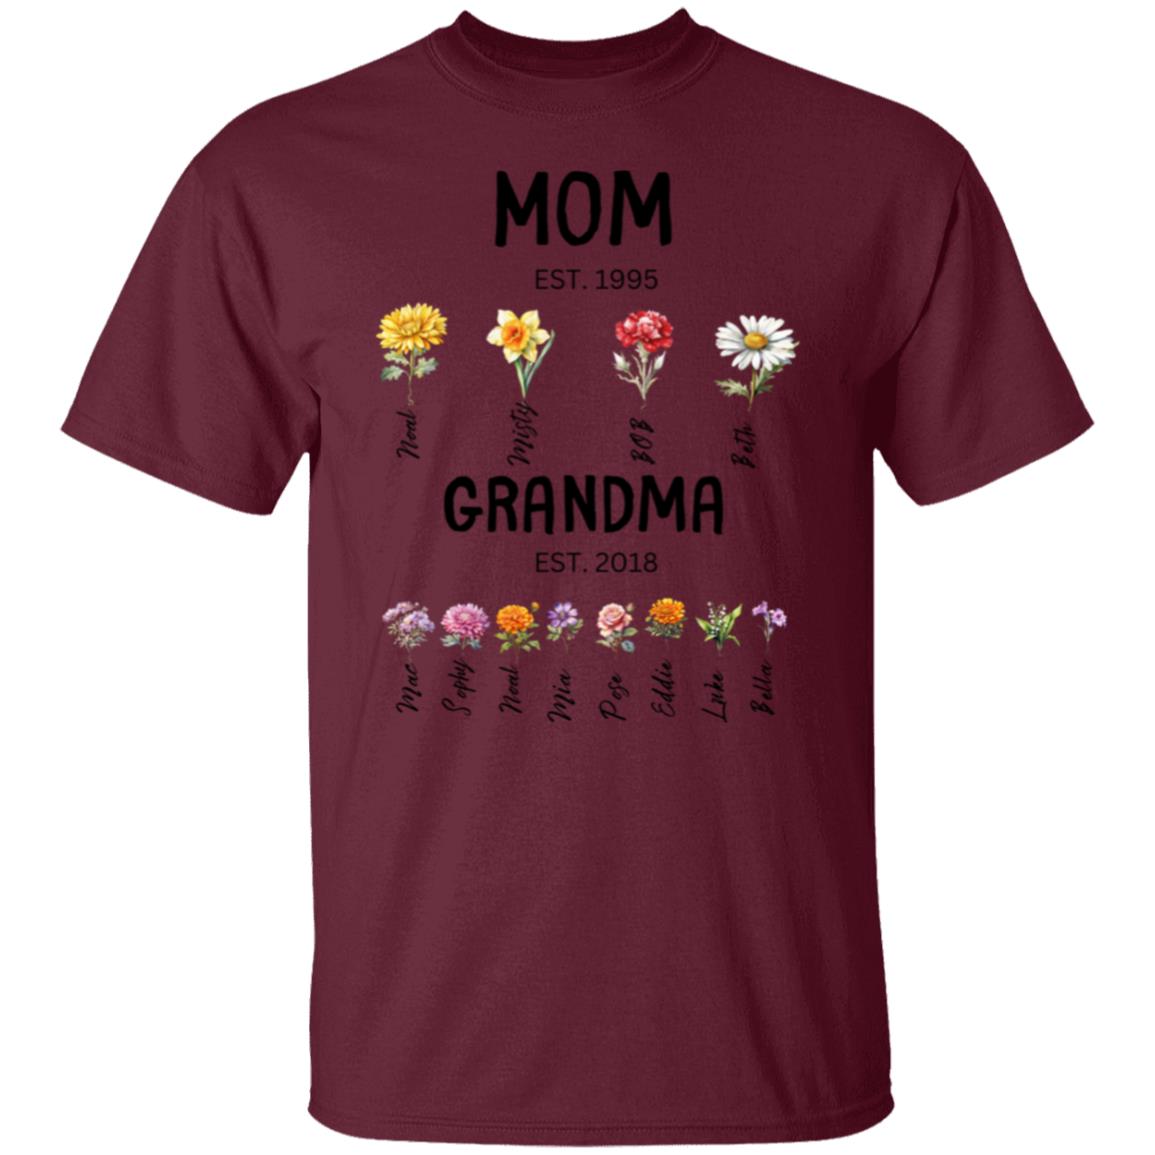 Mom/Grandma EST. Birth flowers Mom/Grandma Est. birth flowers Tees Shirt